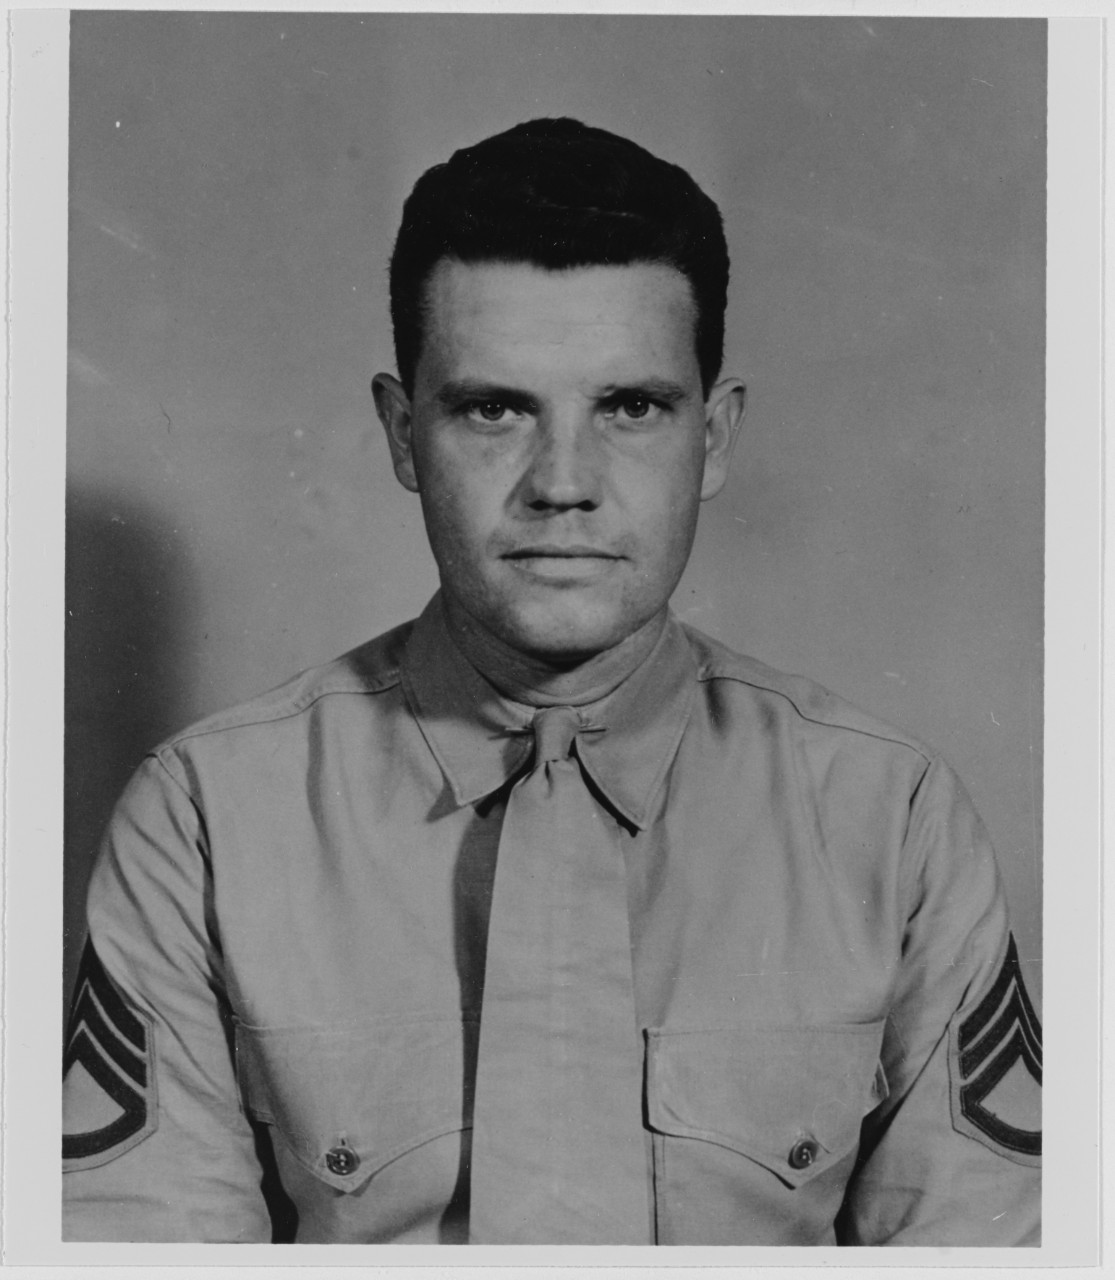 Sergeant Thomas E. Hailey, USMC. Pearl Harbor, USS OKLAHOMA (BB-37)